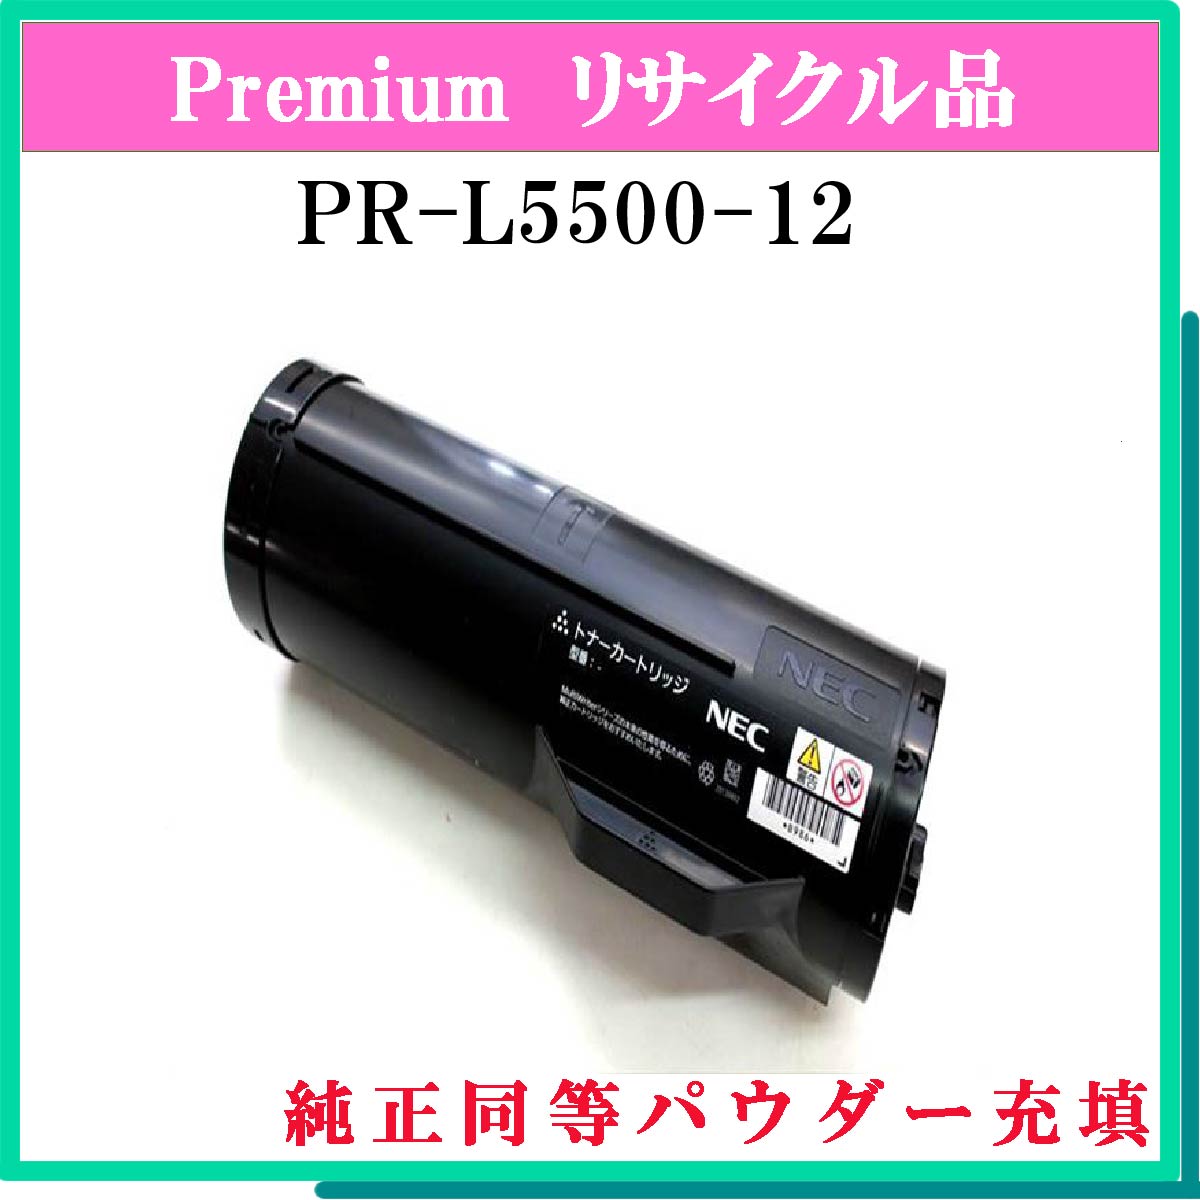 PR-L5500-12 (純正同等ﾊﾟｳﾀﾞｰ)